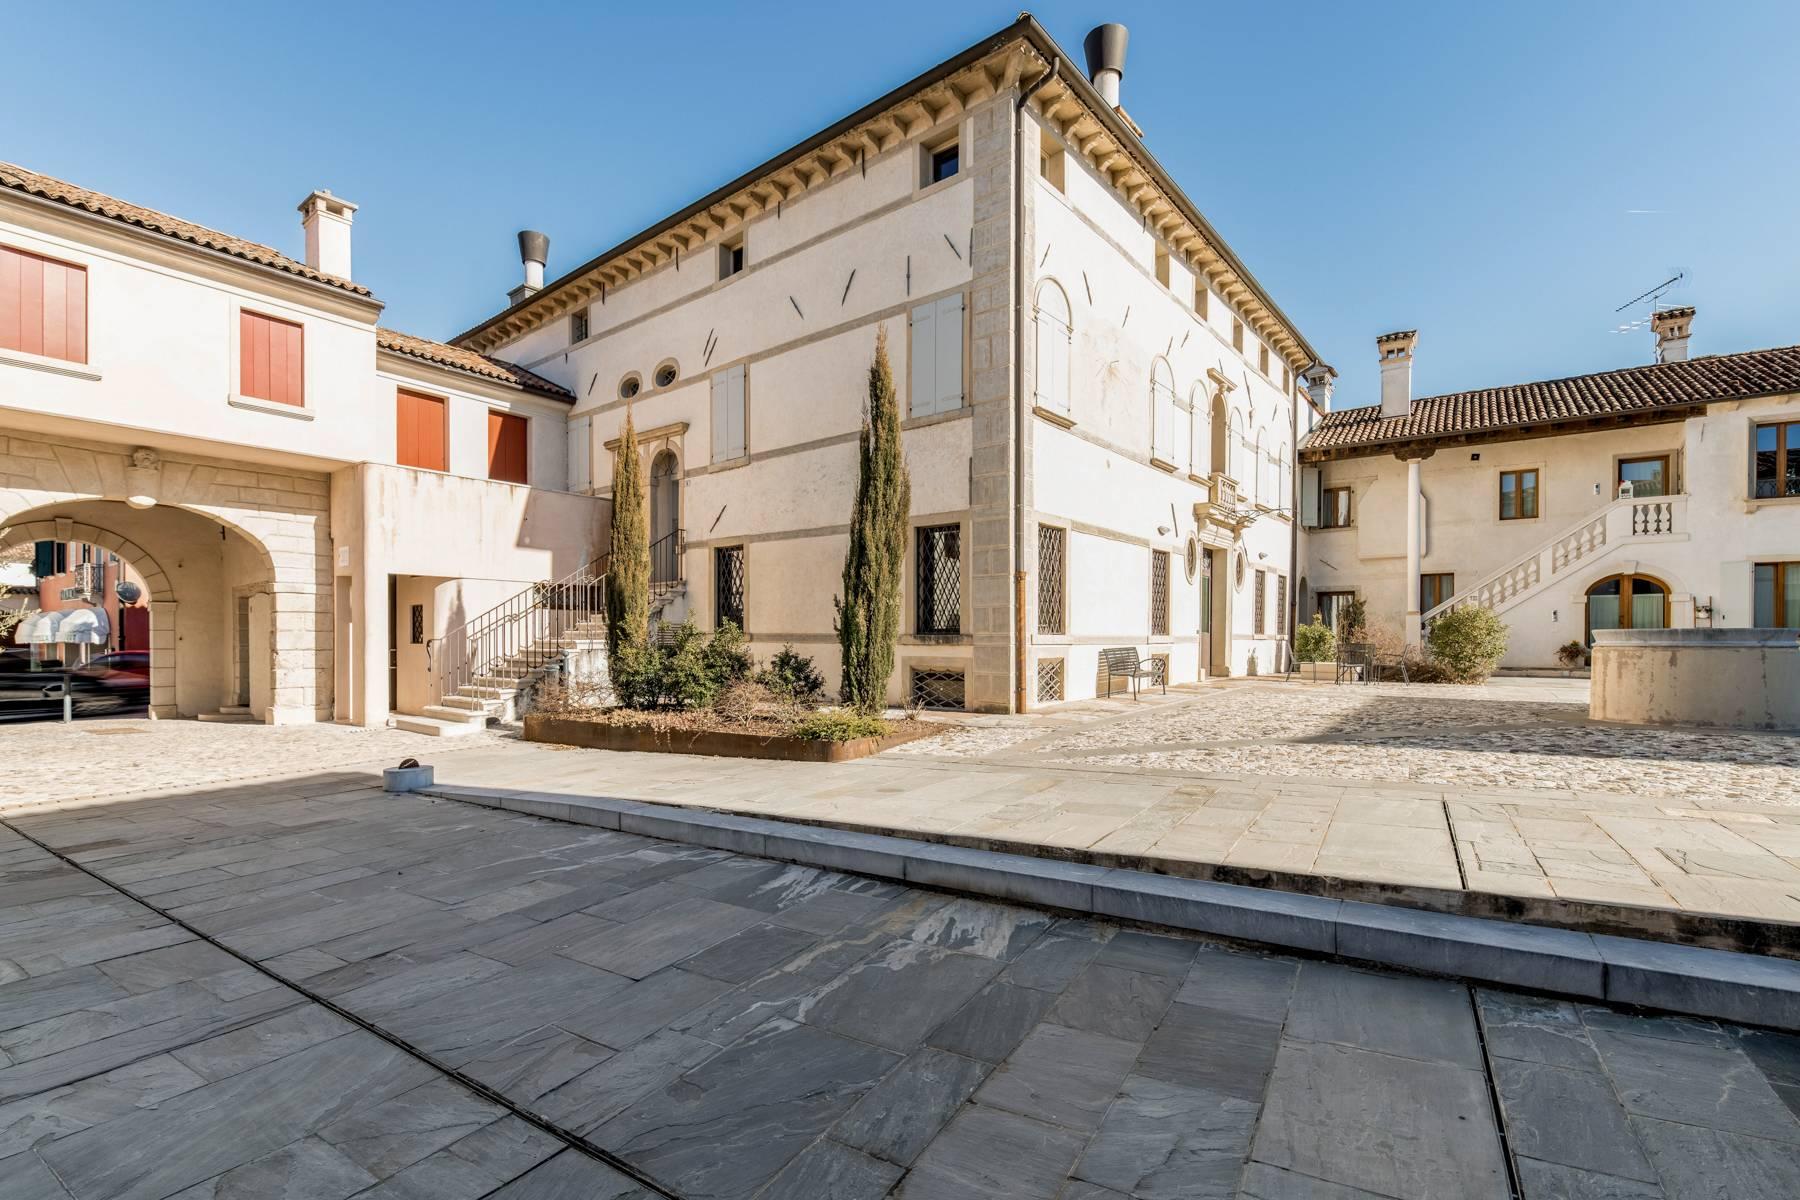 Penthouse de luxe dans une villa vénitienne du 17ème siècle entièrement rénovée - 26